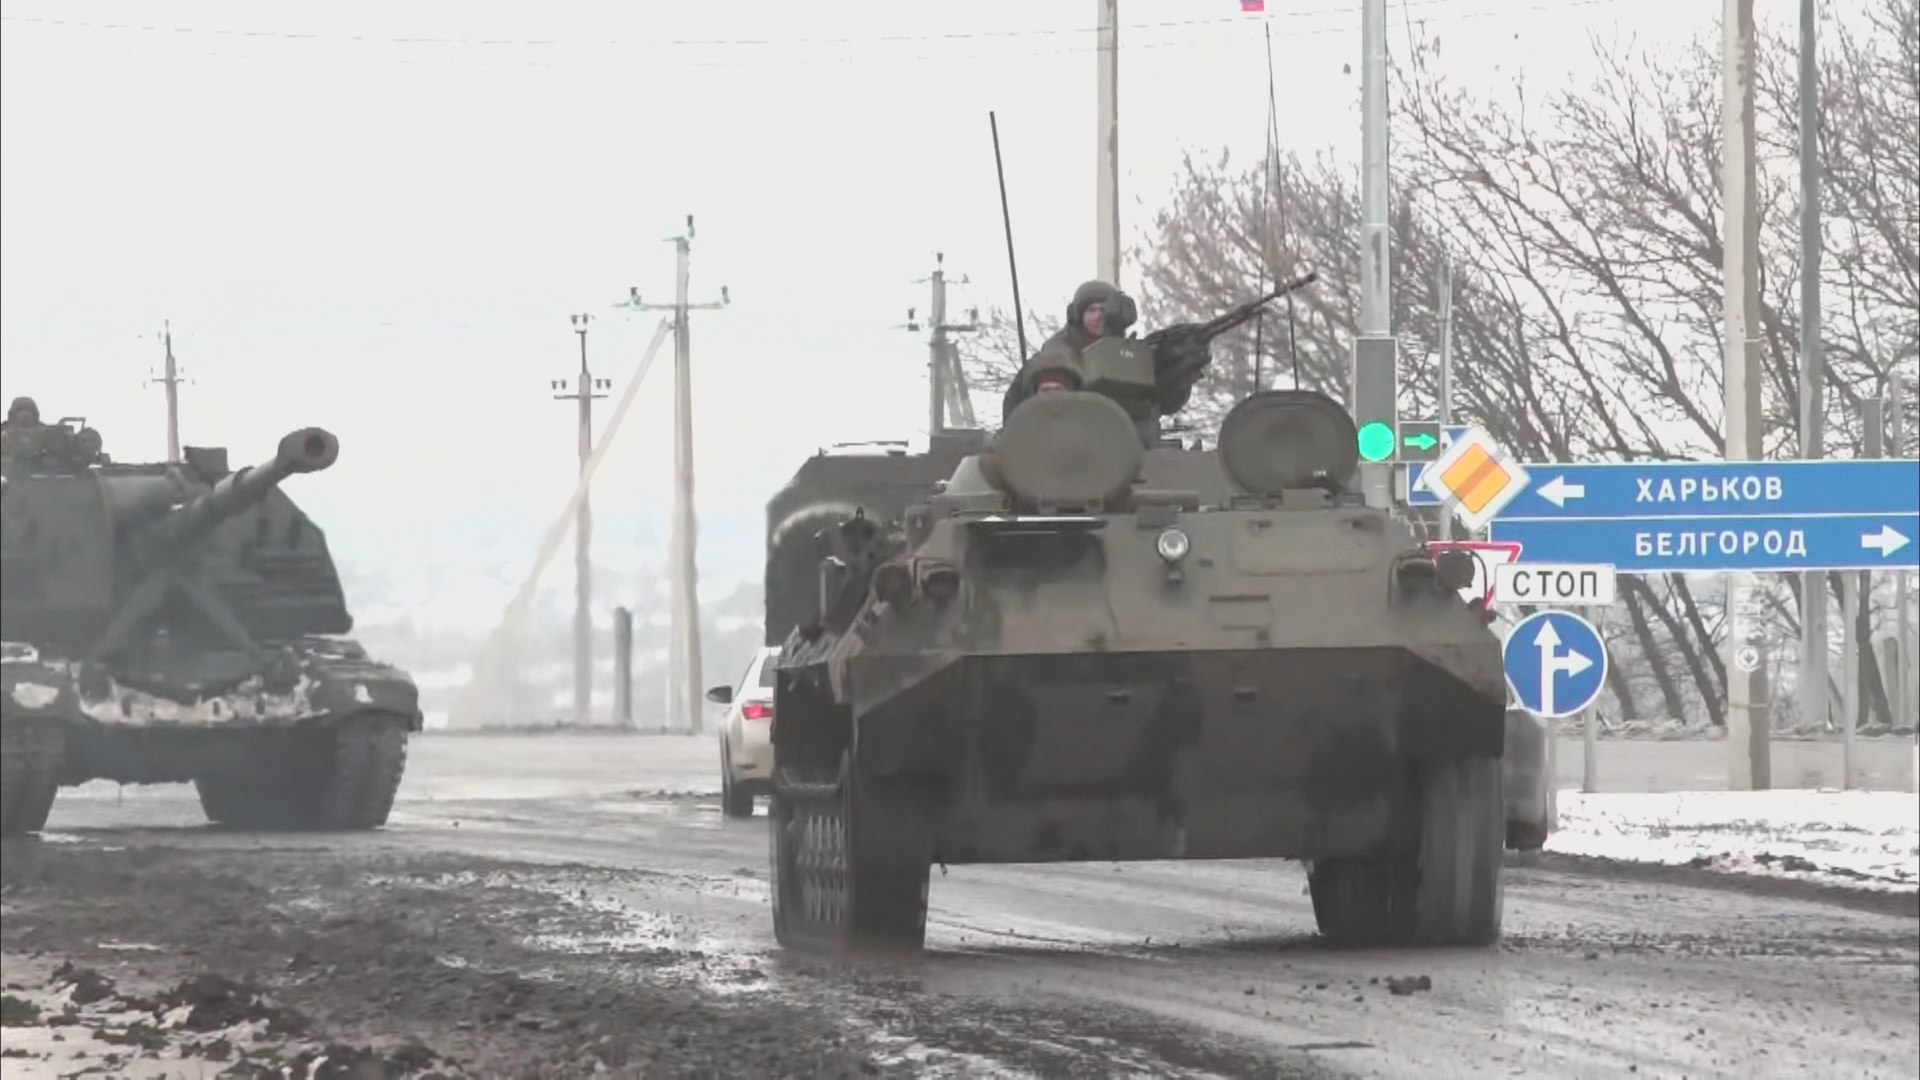 Armed vehicles in Ukraine.